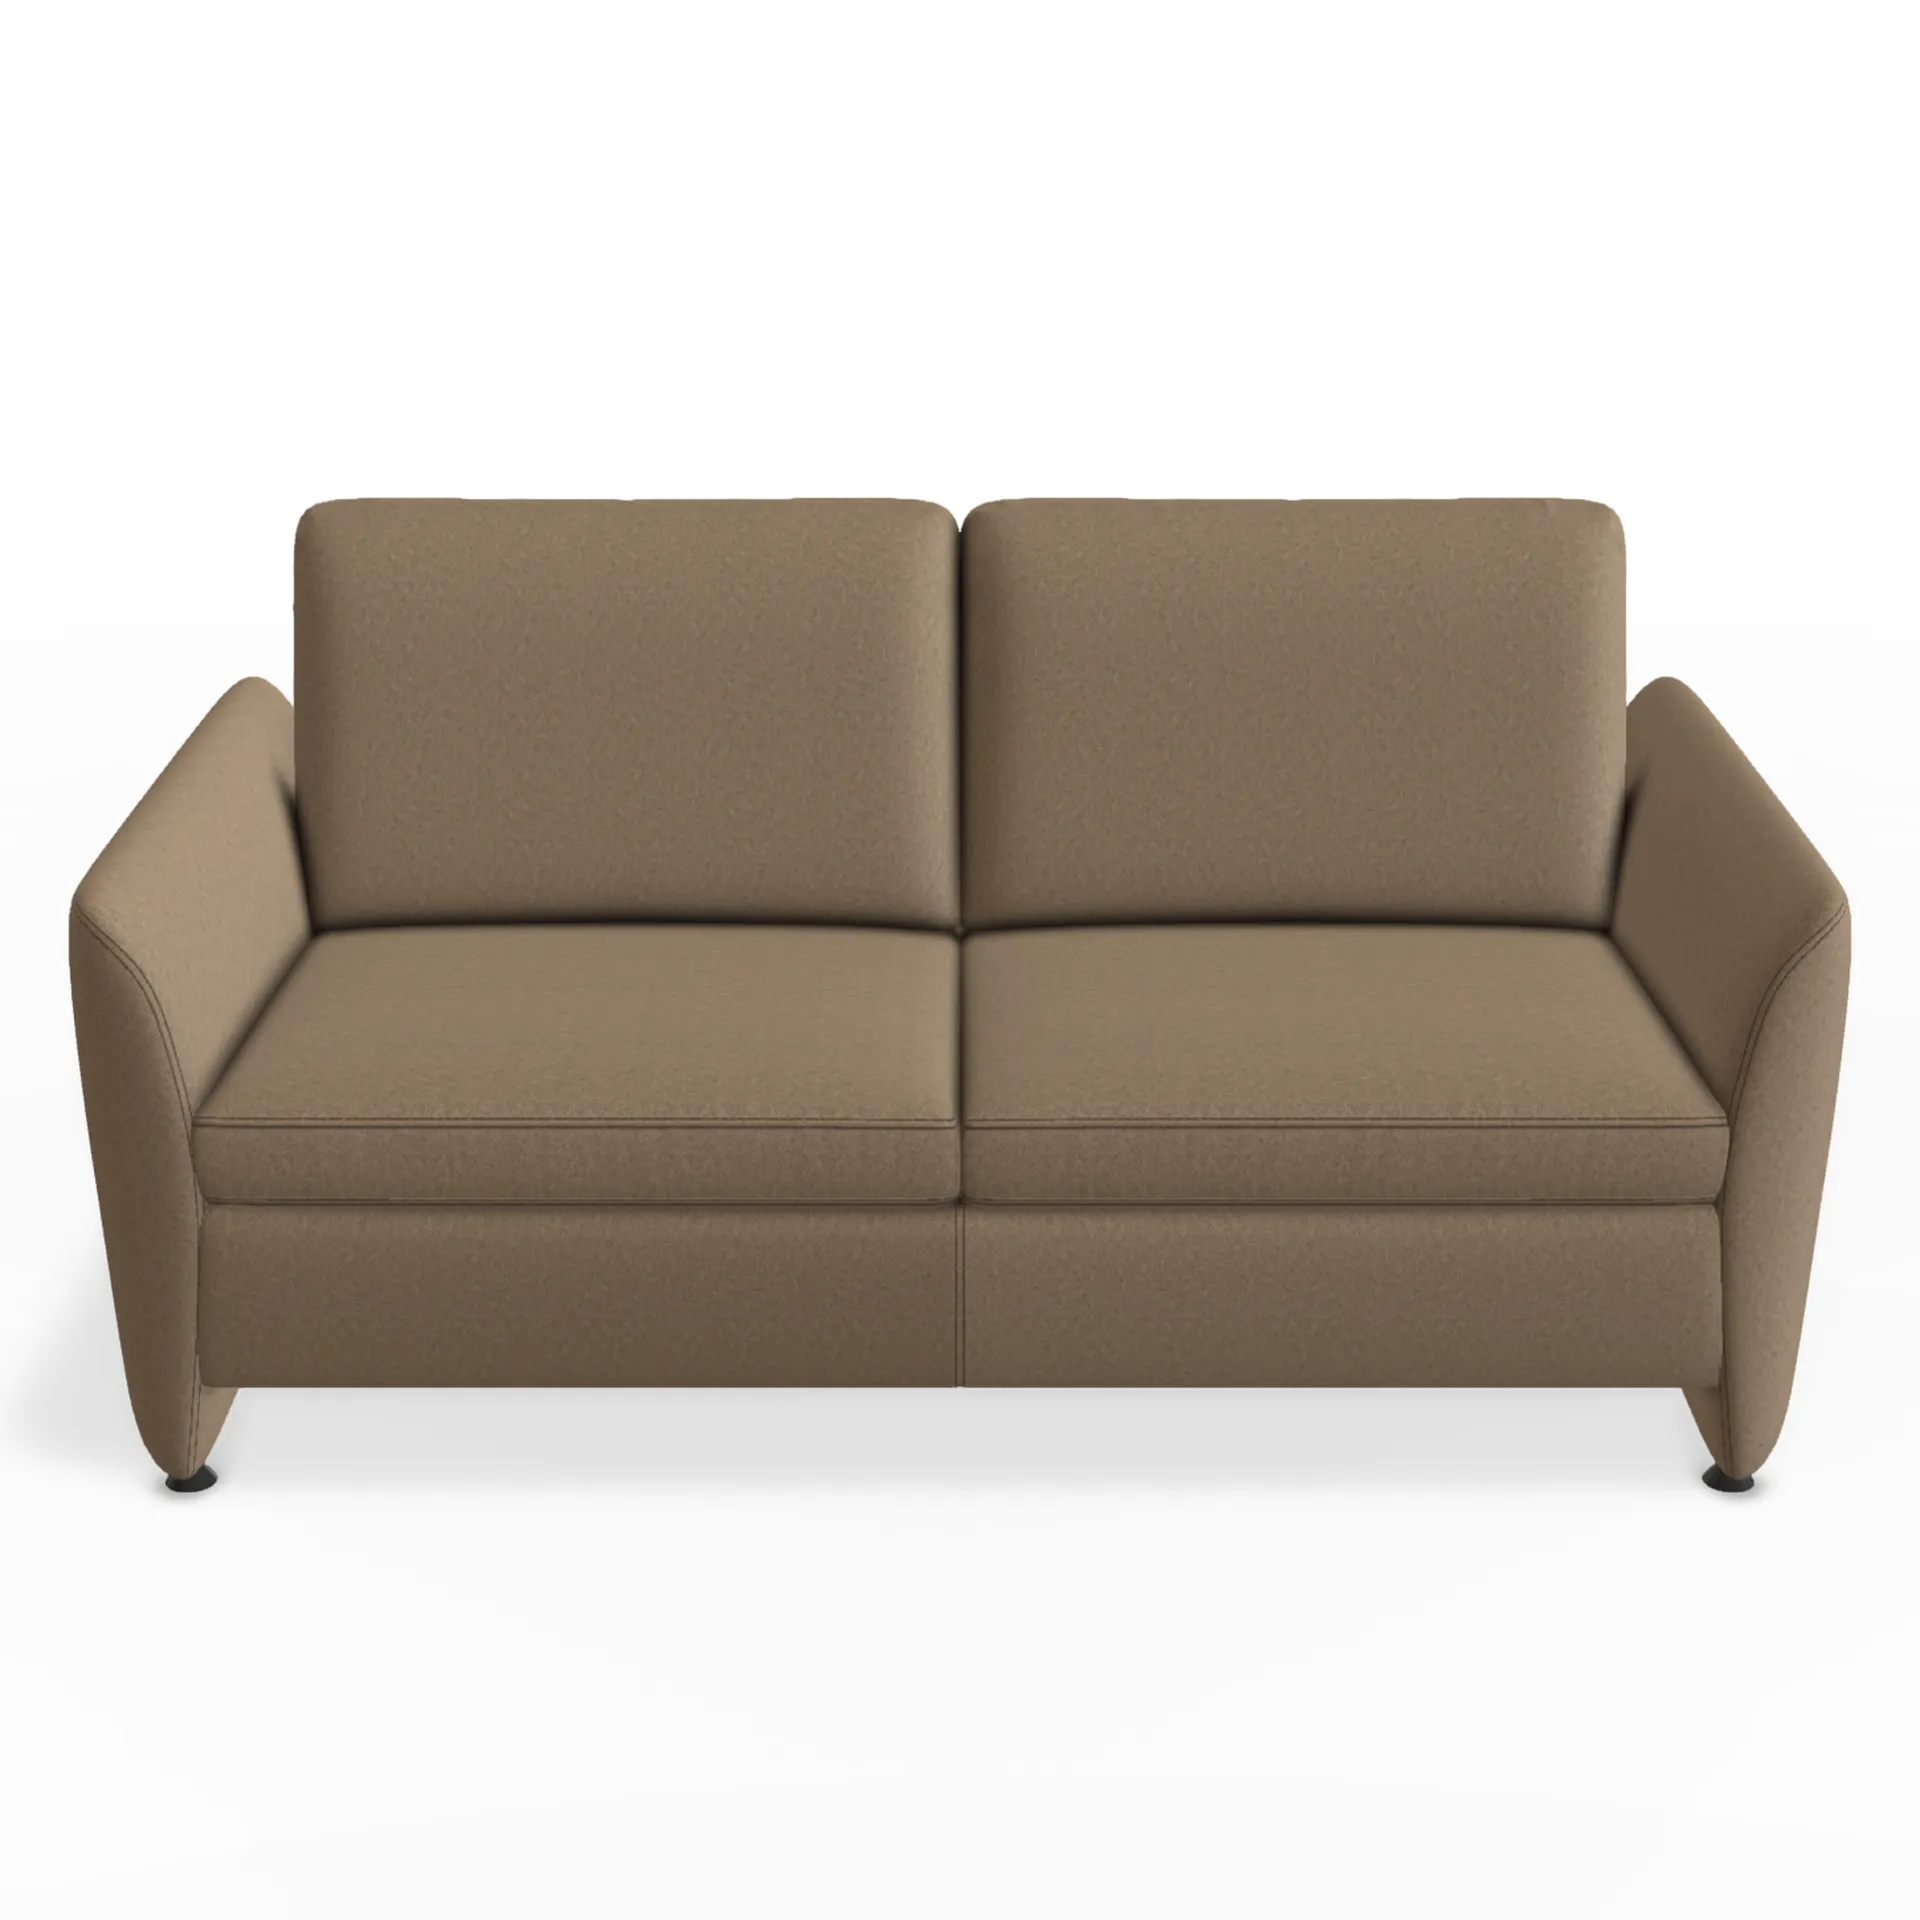 bodennahe Armlehne an diesem wunderschönen 2,5 sitzer sofa in braunem stoff